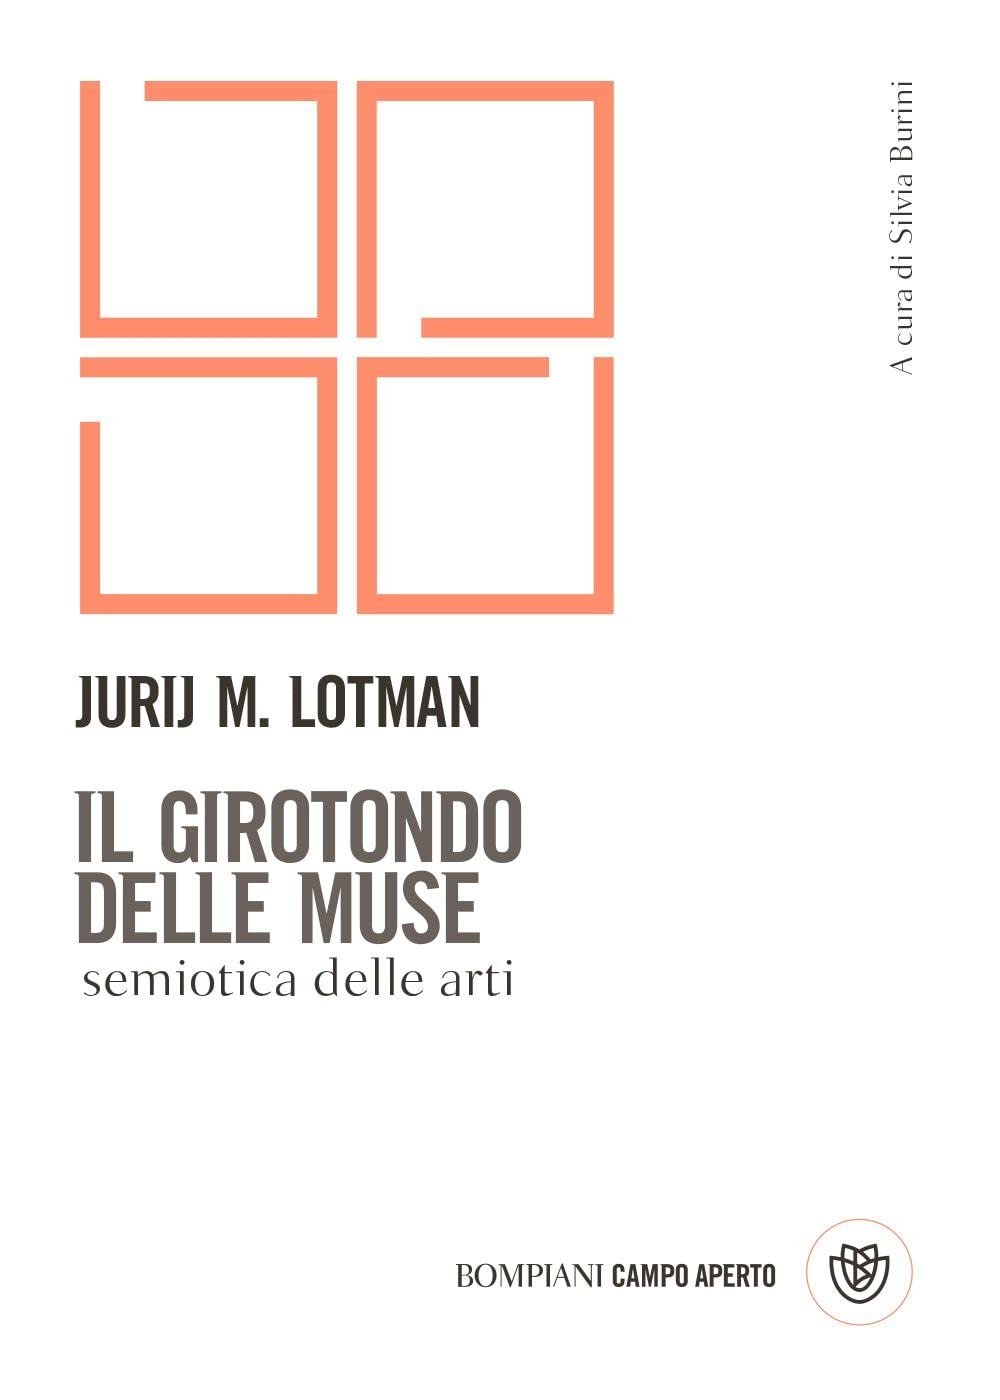 Jurij Lotman – Il girotondo delle muse. Semiotica delle arti (Bompiani, Milano 2022)